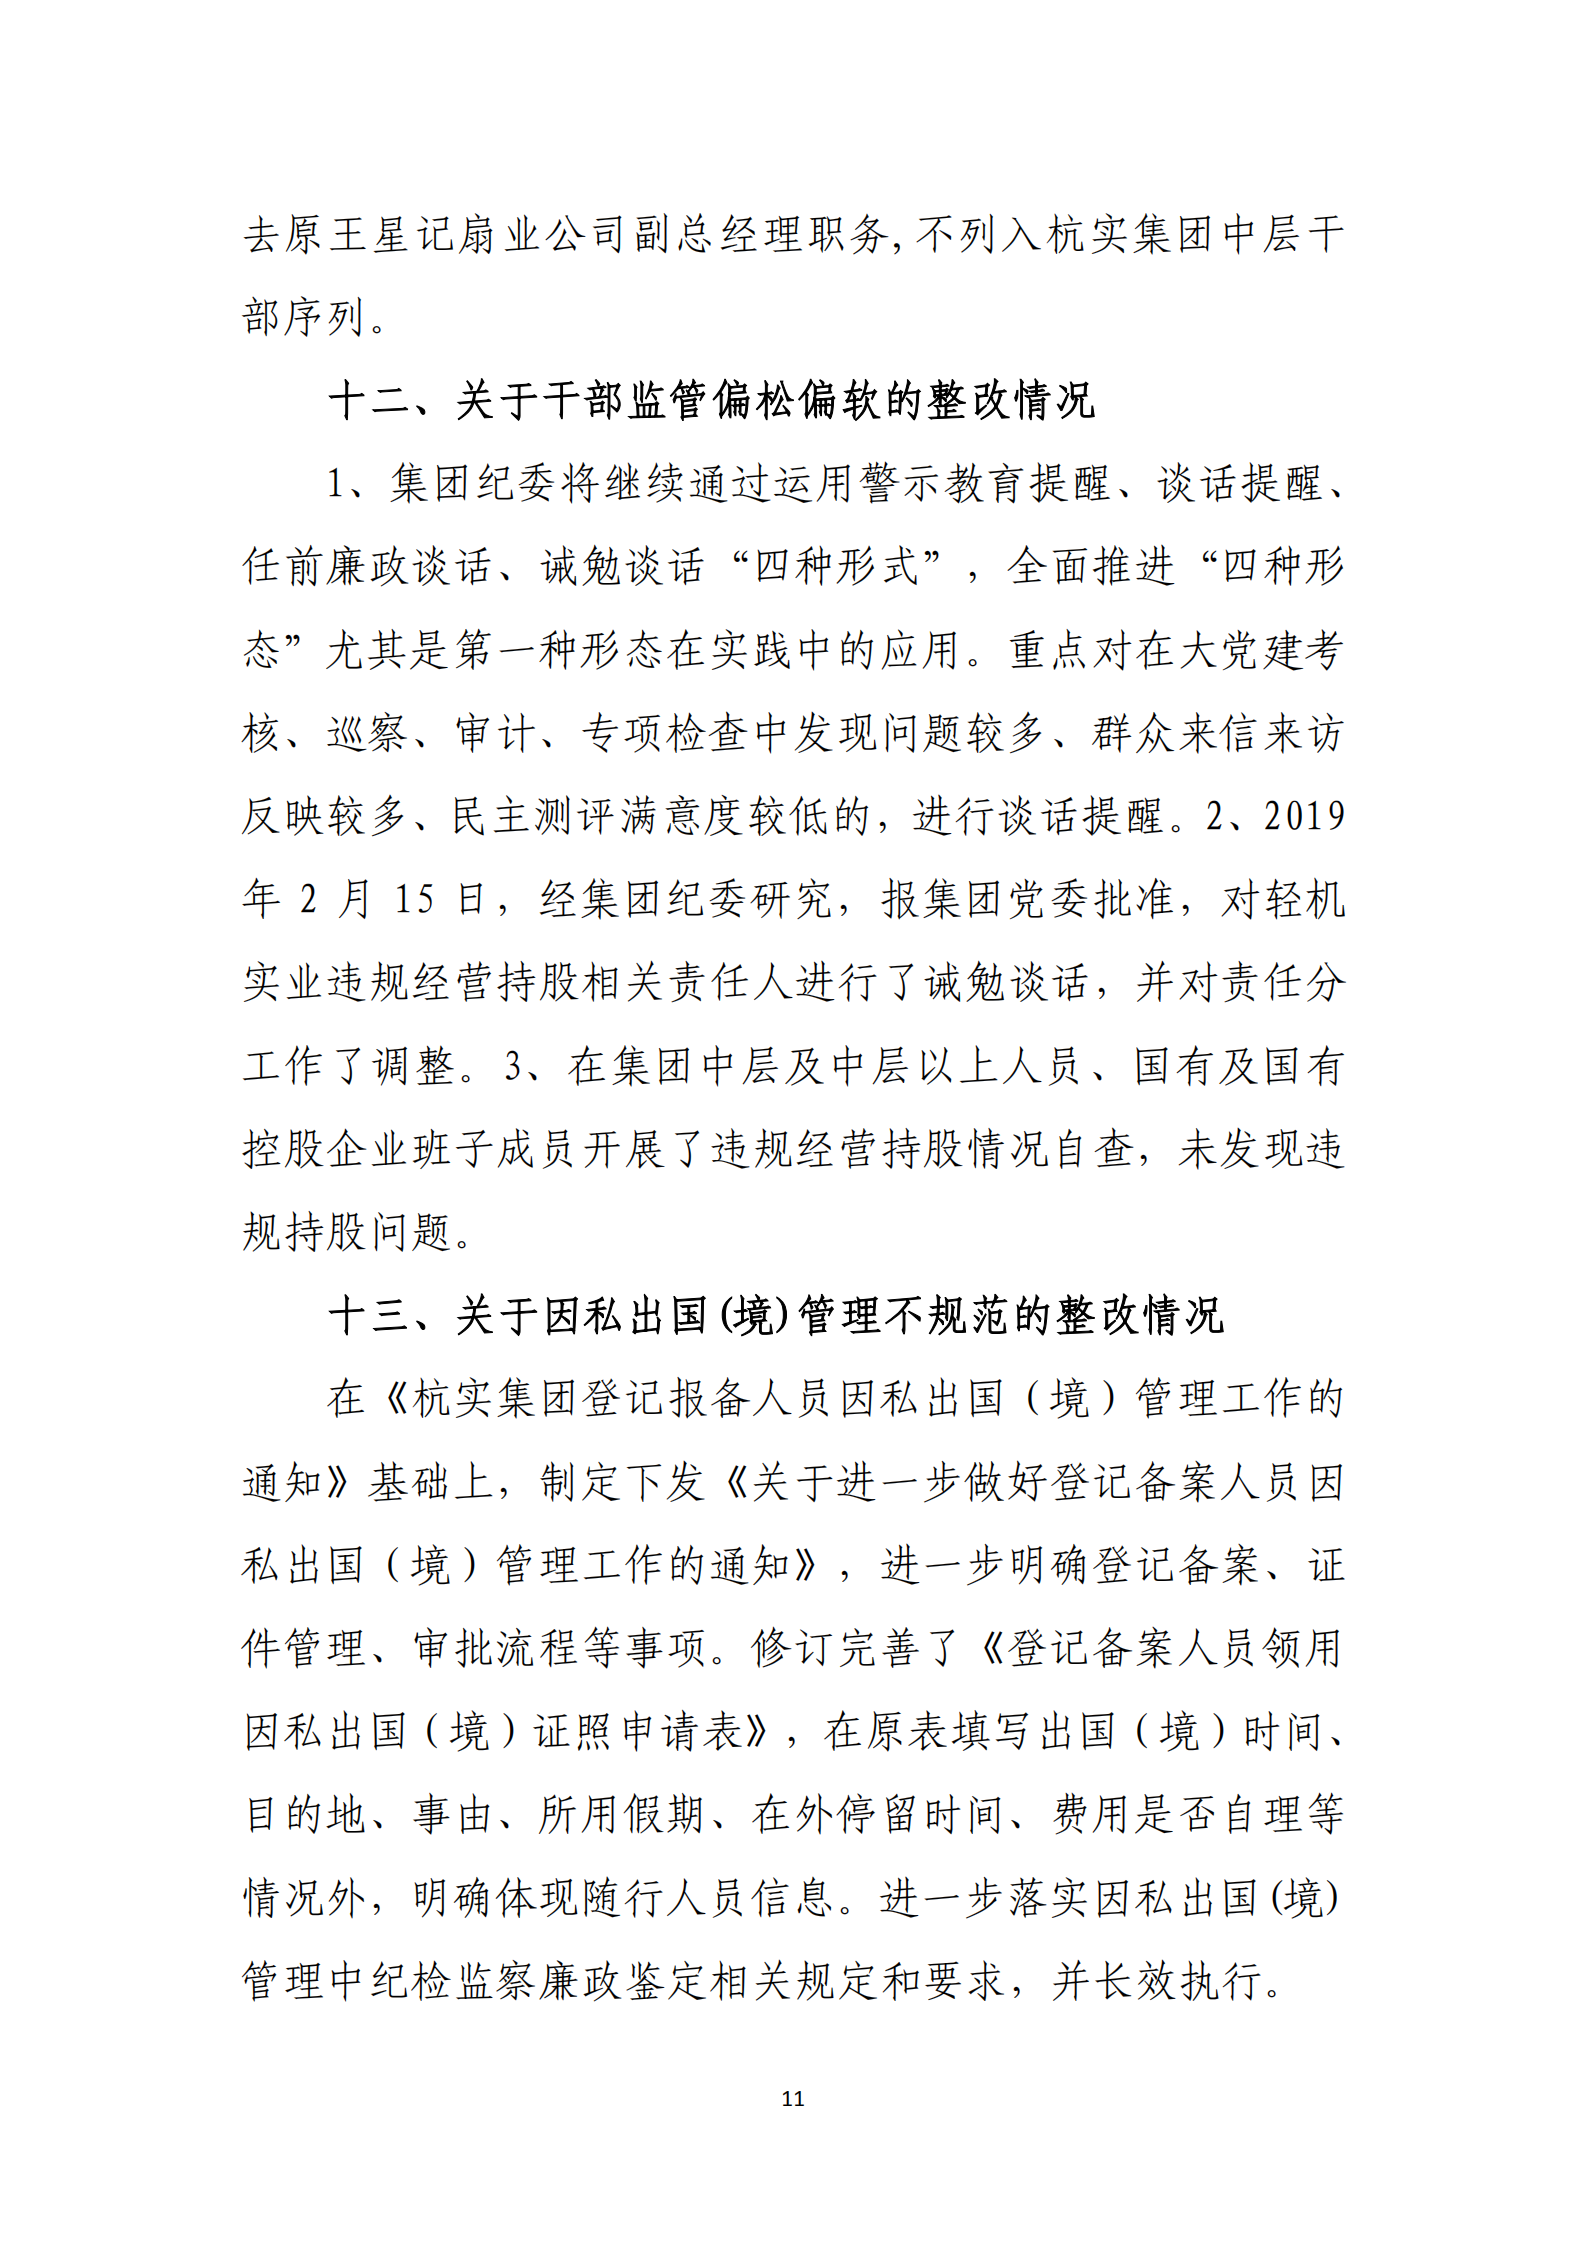 博乐体育网页【中国】有限公司党委关于巡察整改情况的通报_10.png